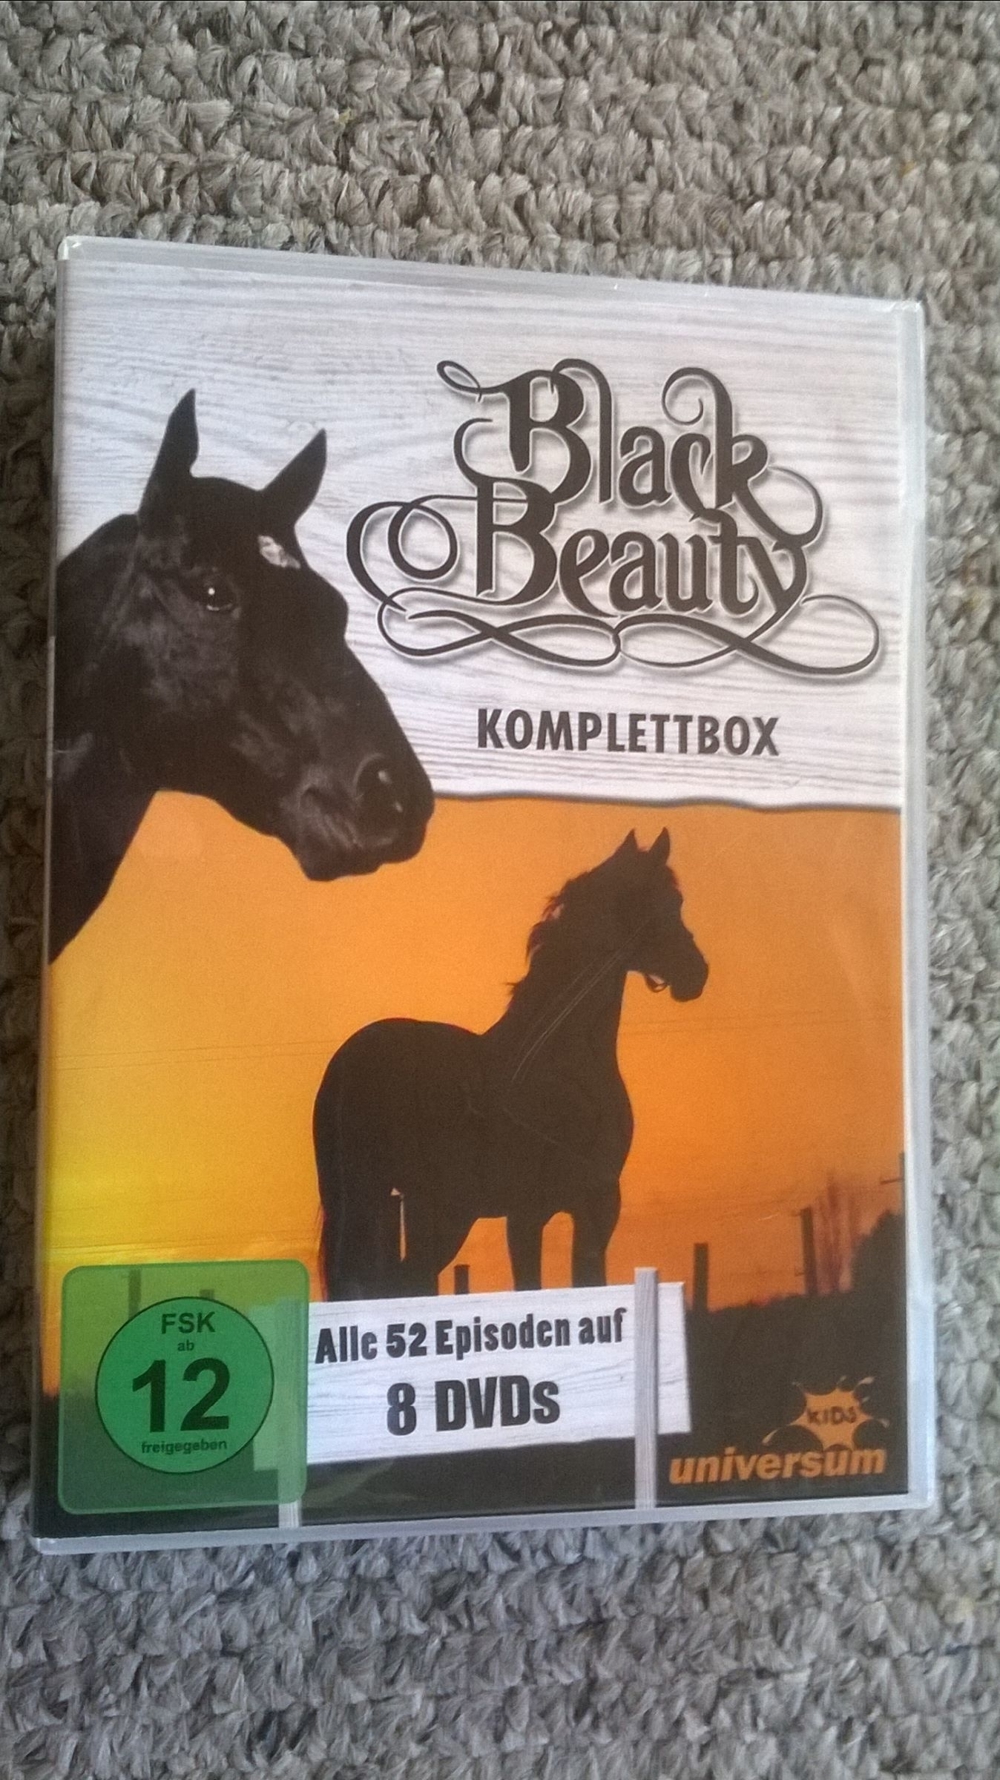 Black Beauty - DVD-Komplettbox - 8 DVDs - 52 Episoden - sehr gut erhalten